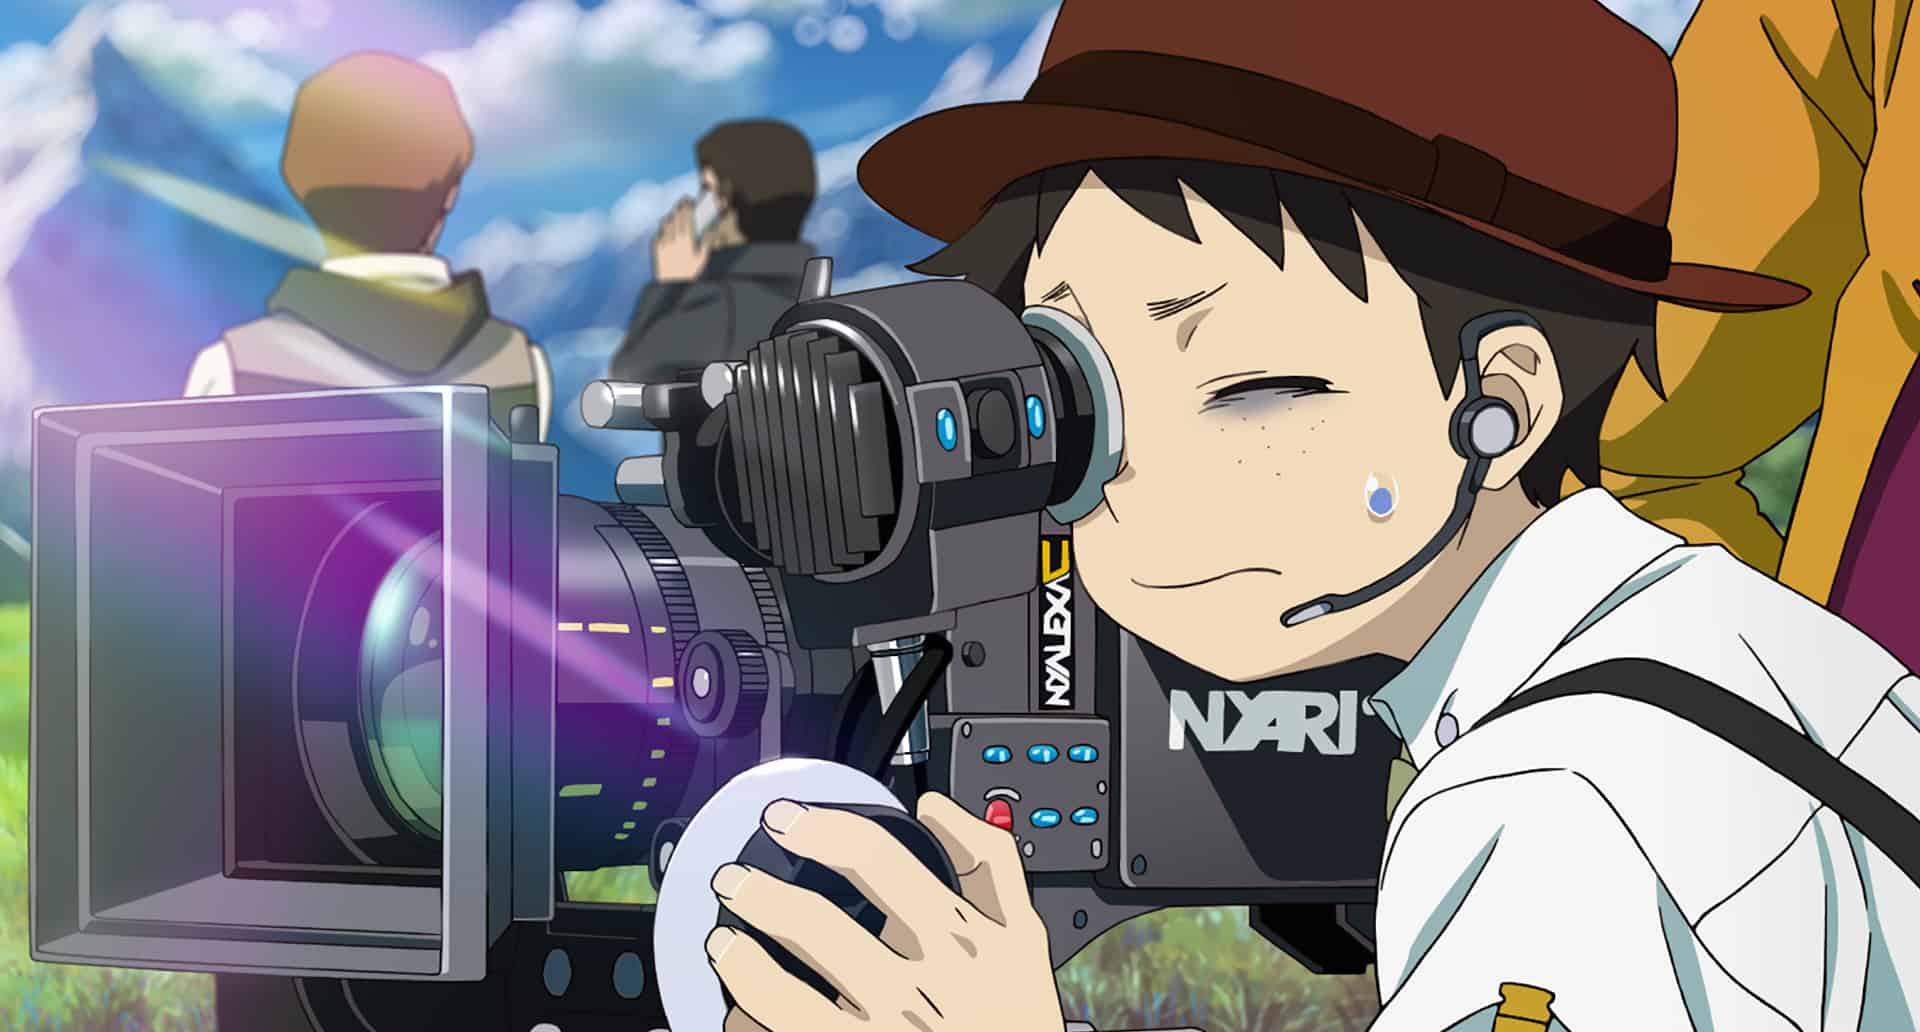 Gene (Hiroya Shimizu) directing a scene